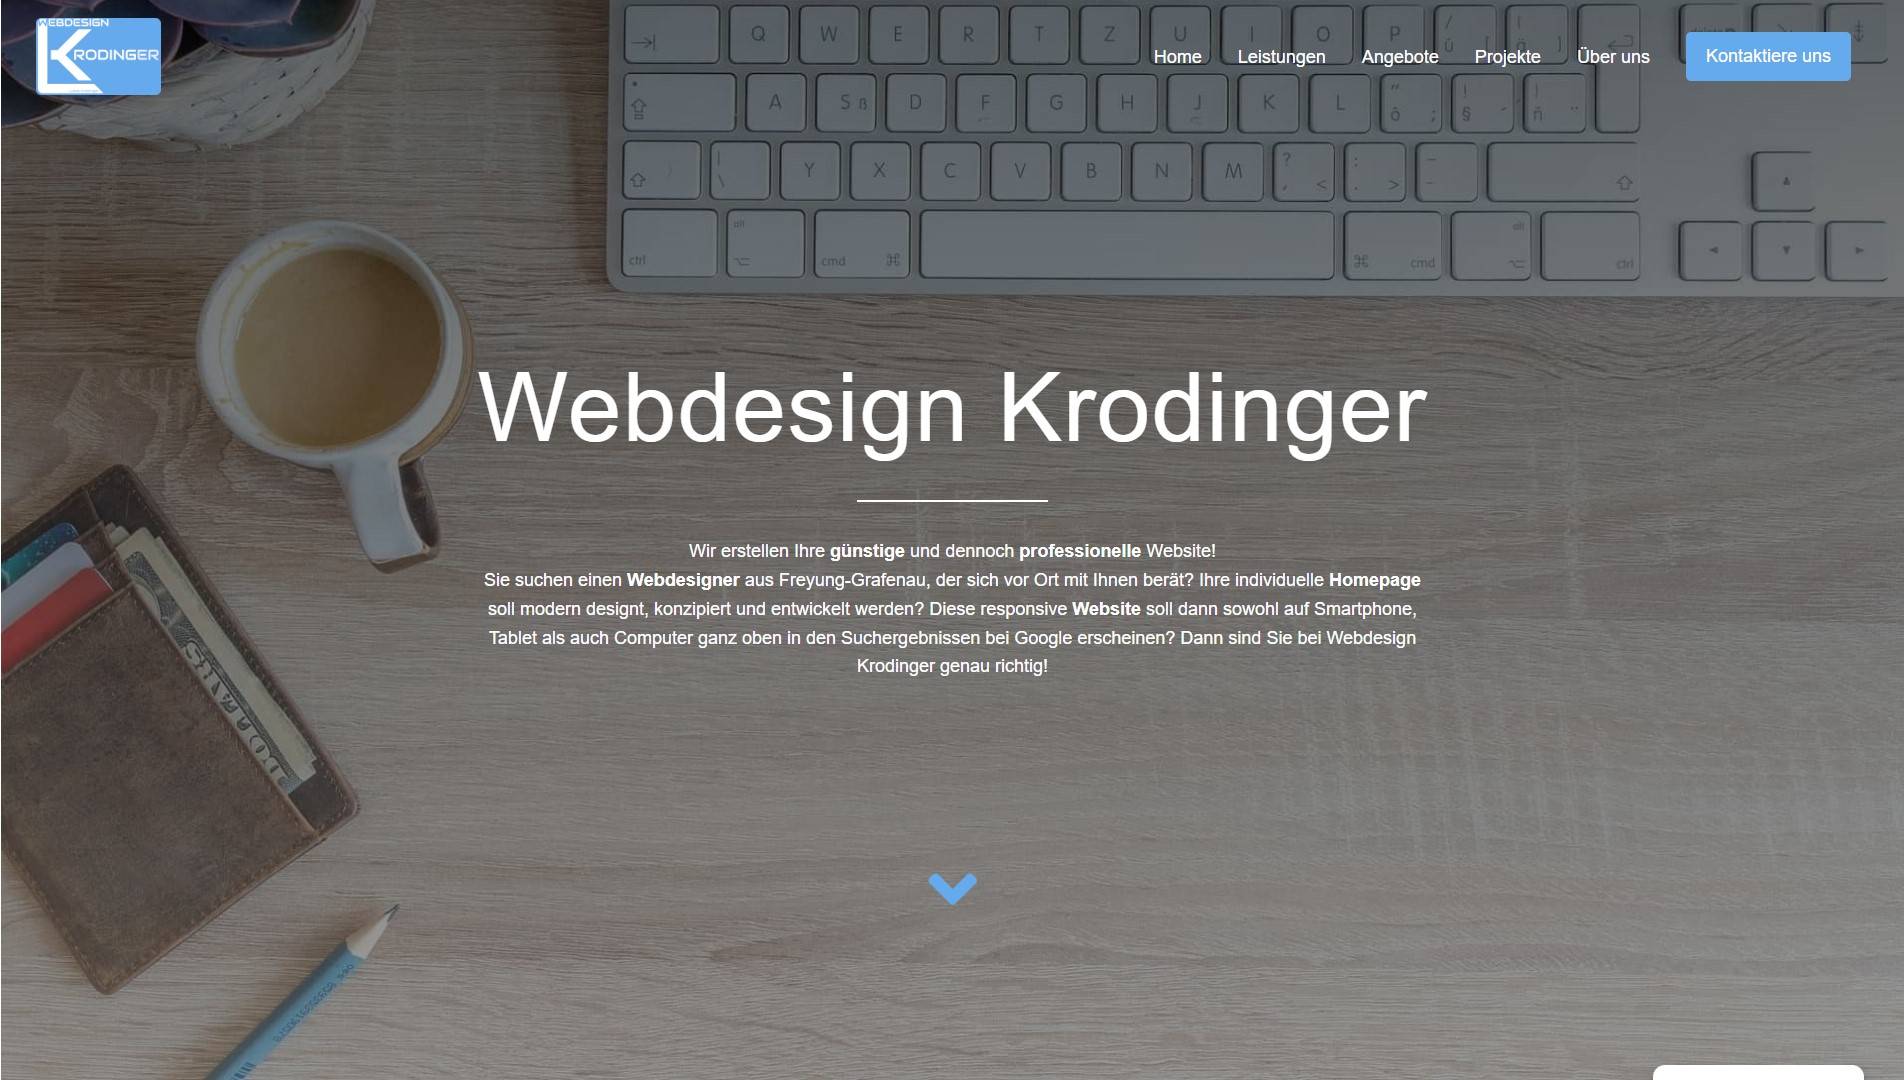 Webdesign Krodinger